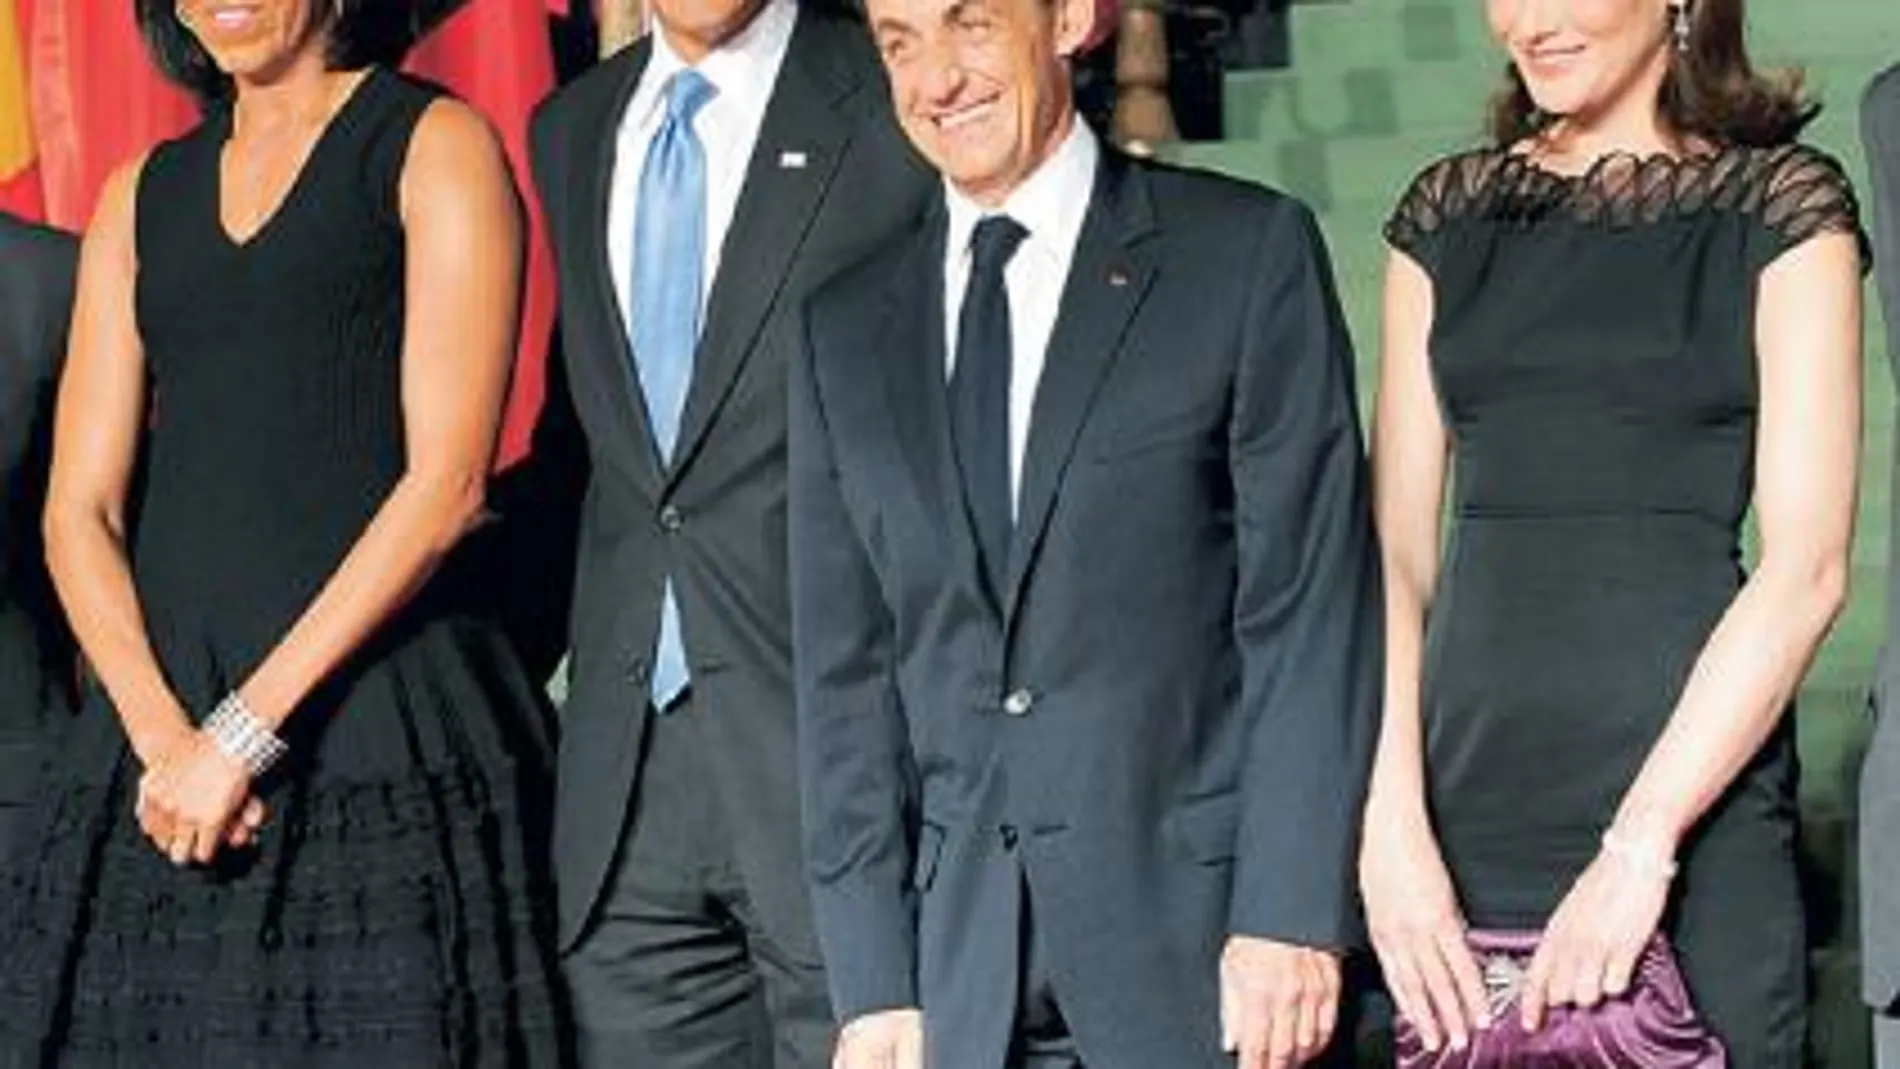 Michelle y Barack Obama, ayer en Estrasburgo, en compañía de Nicolas Sarkozy y Carla Bruni